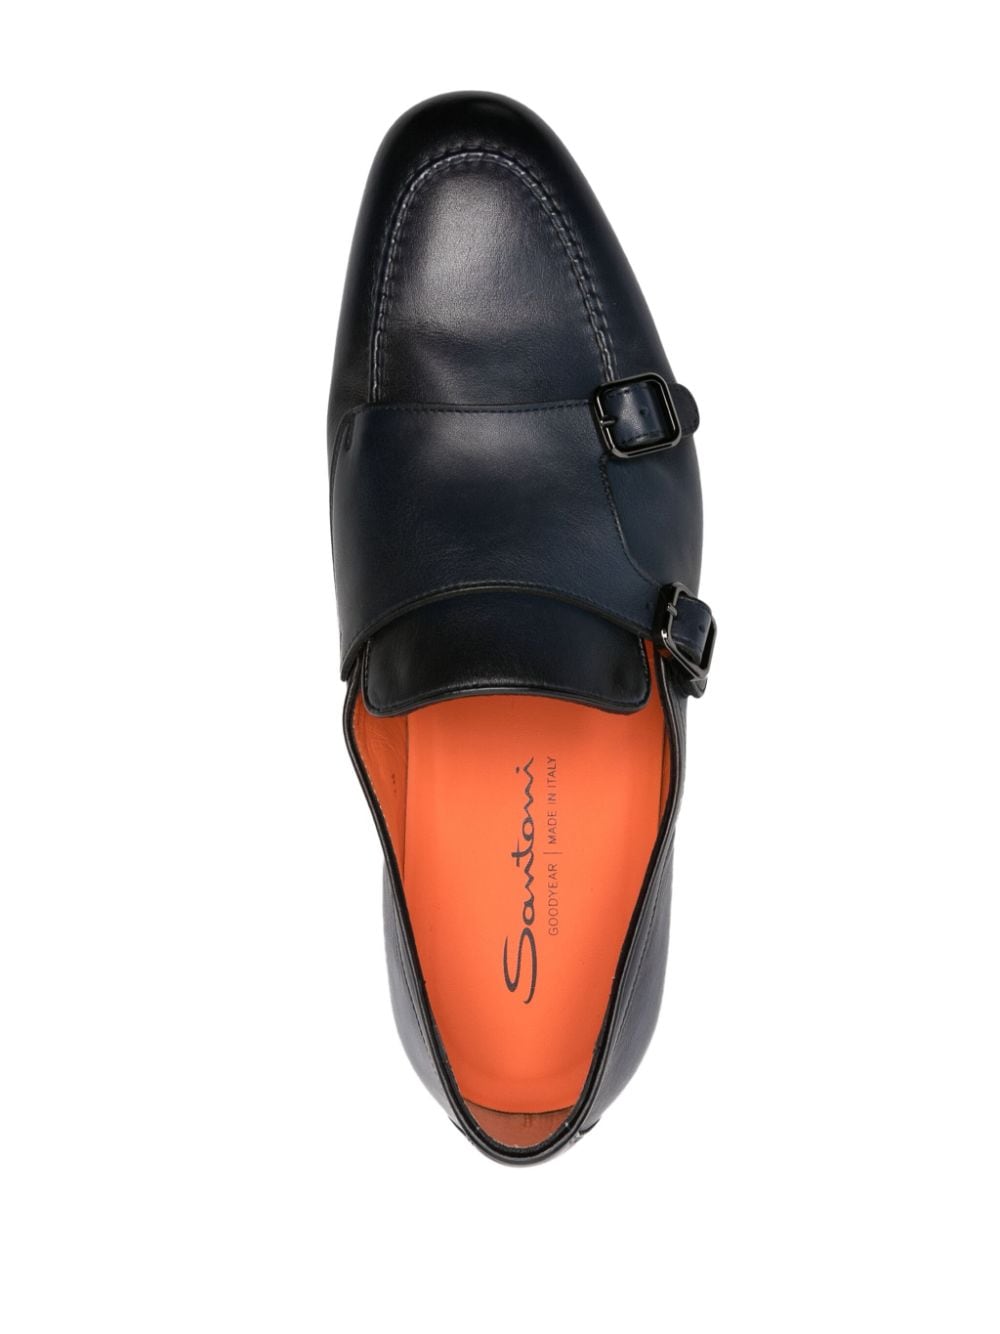 Santoni SANTONI- Leather Shoe